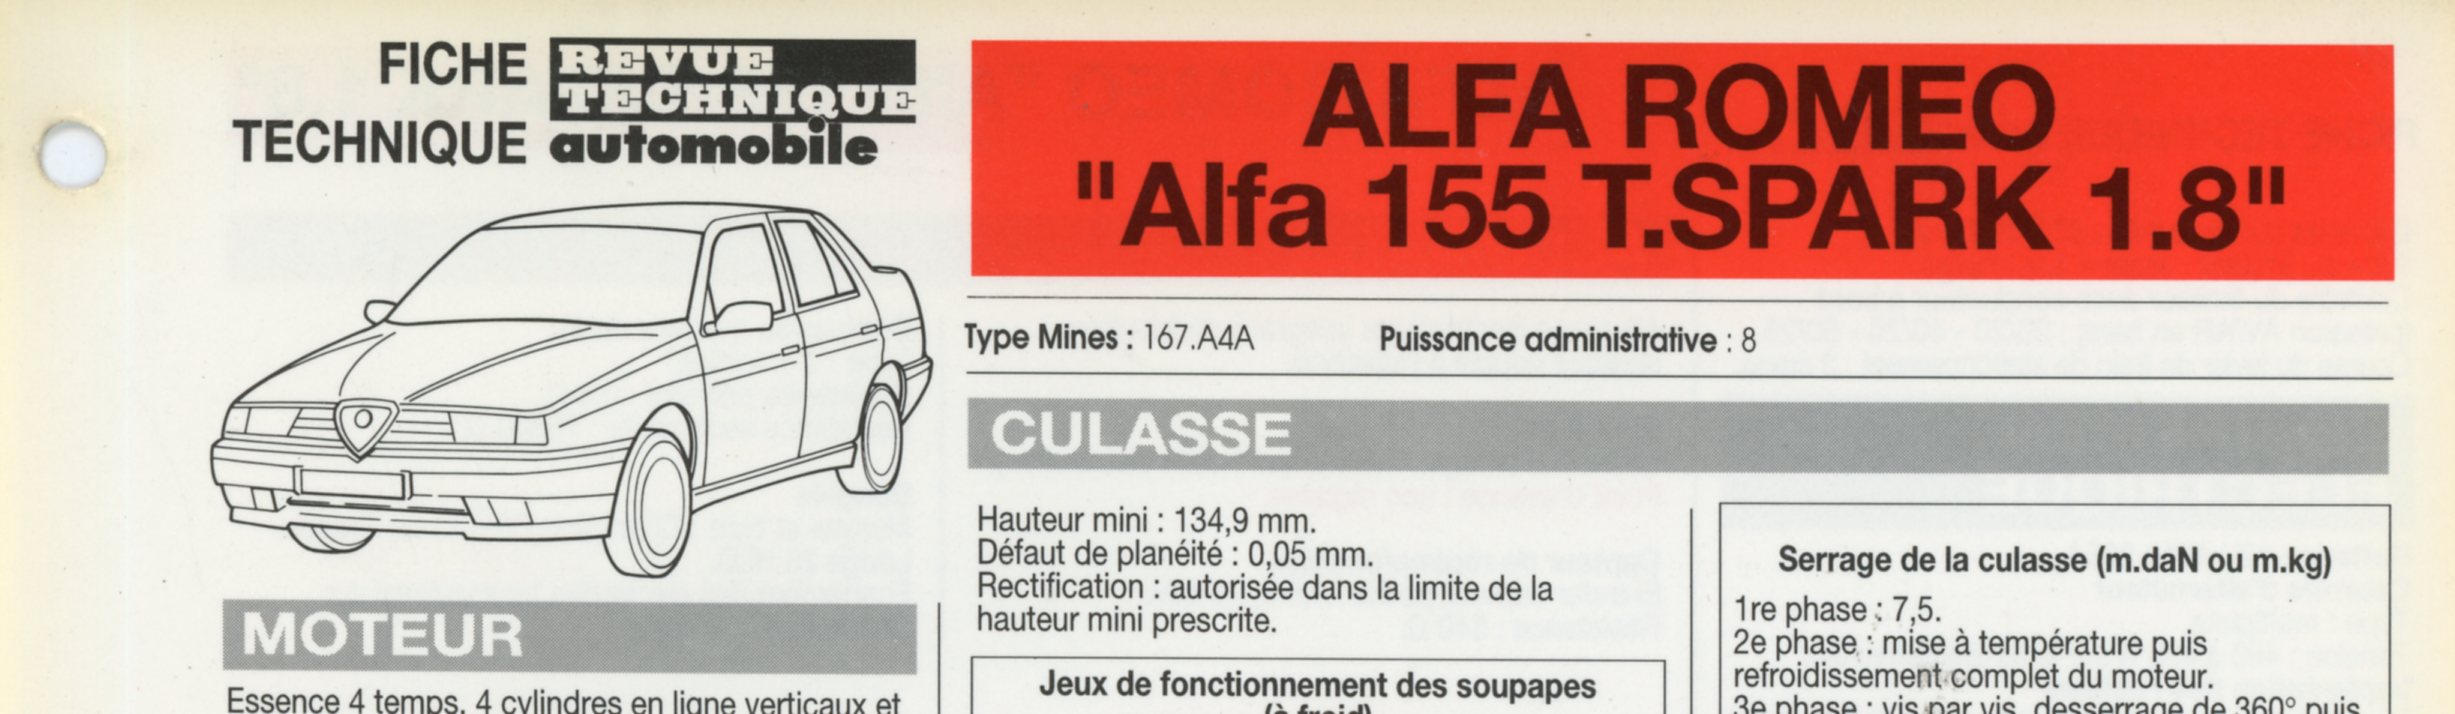 FICHE-TECHNIQUE-ALFA-155-SPARK-1993-FICHE-RTA-LEMASTERBROCKERS